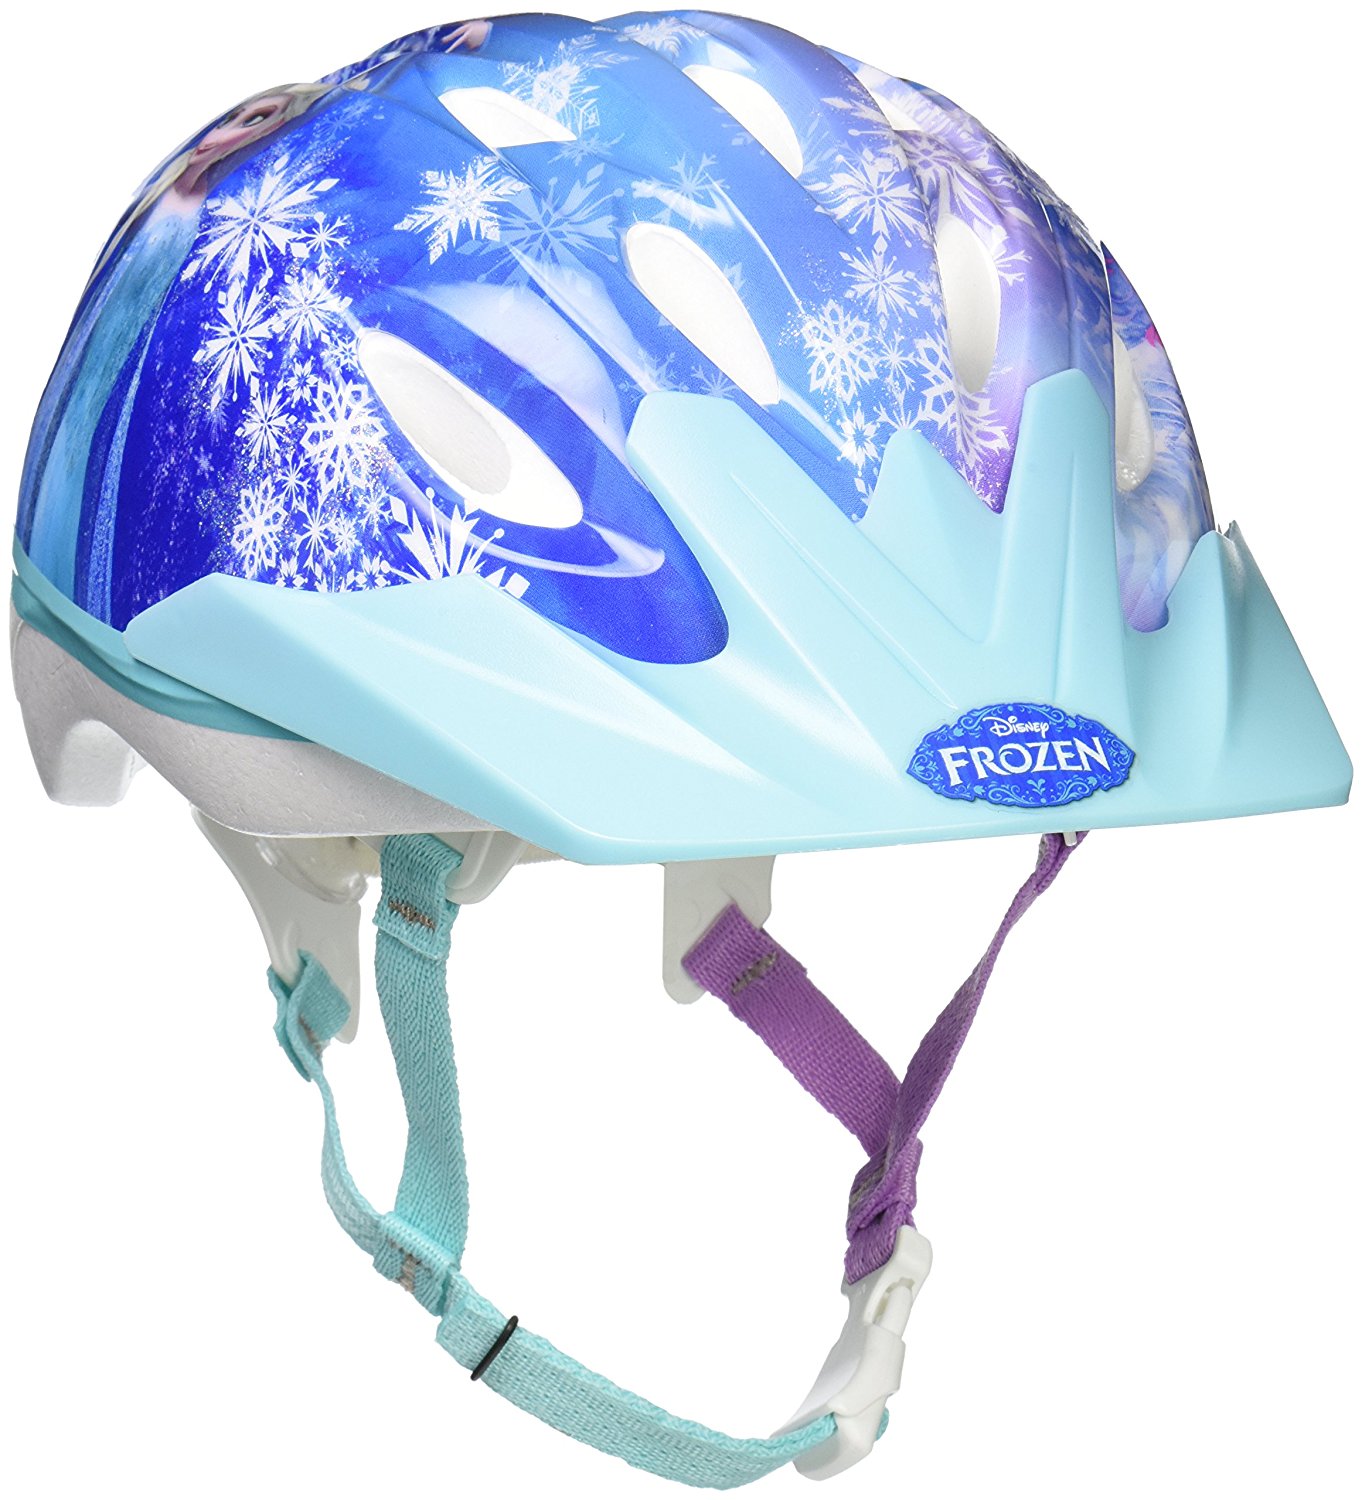 Children’s Frozen Bell Bike Helmets – Just $10.09!